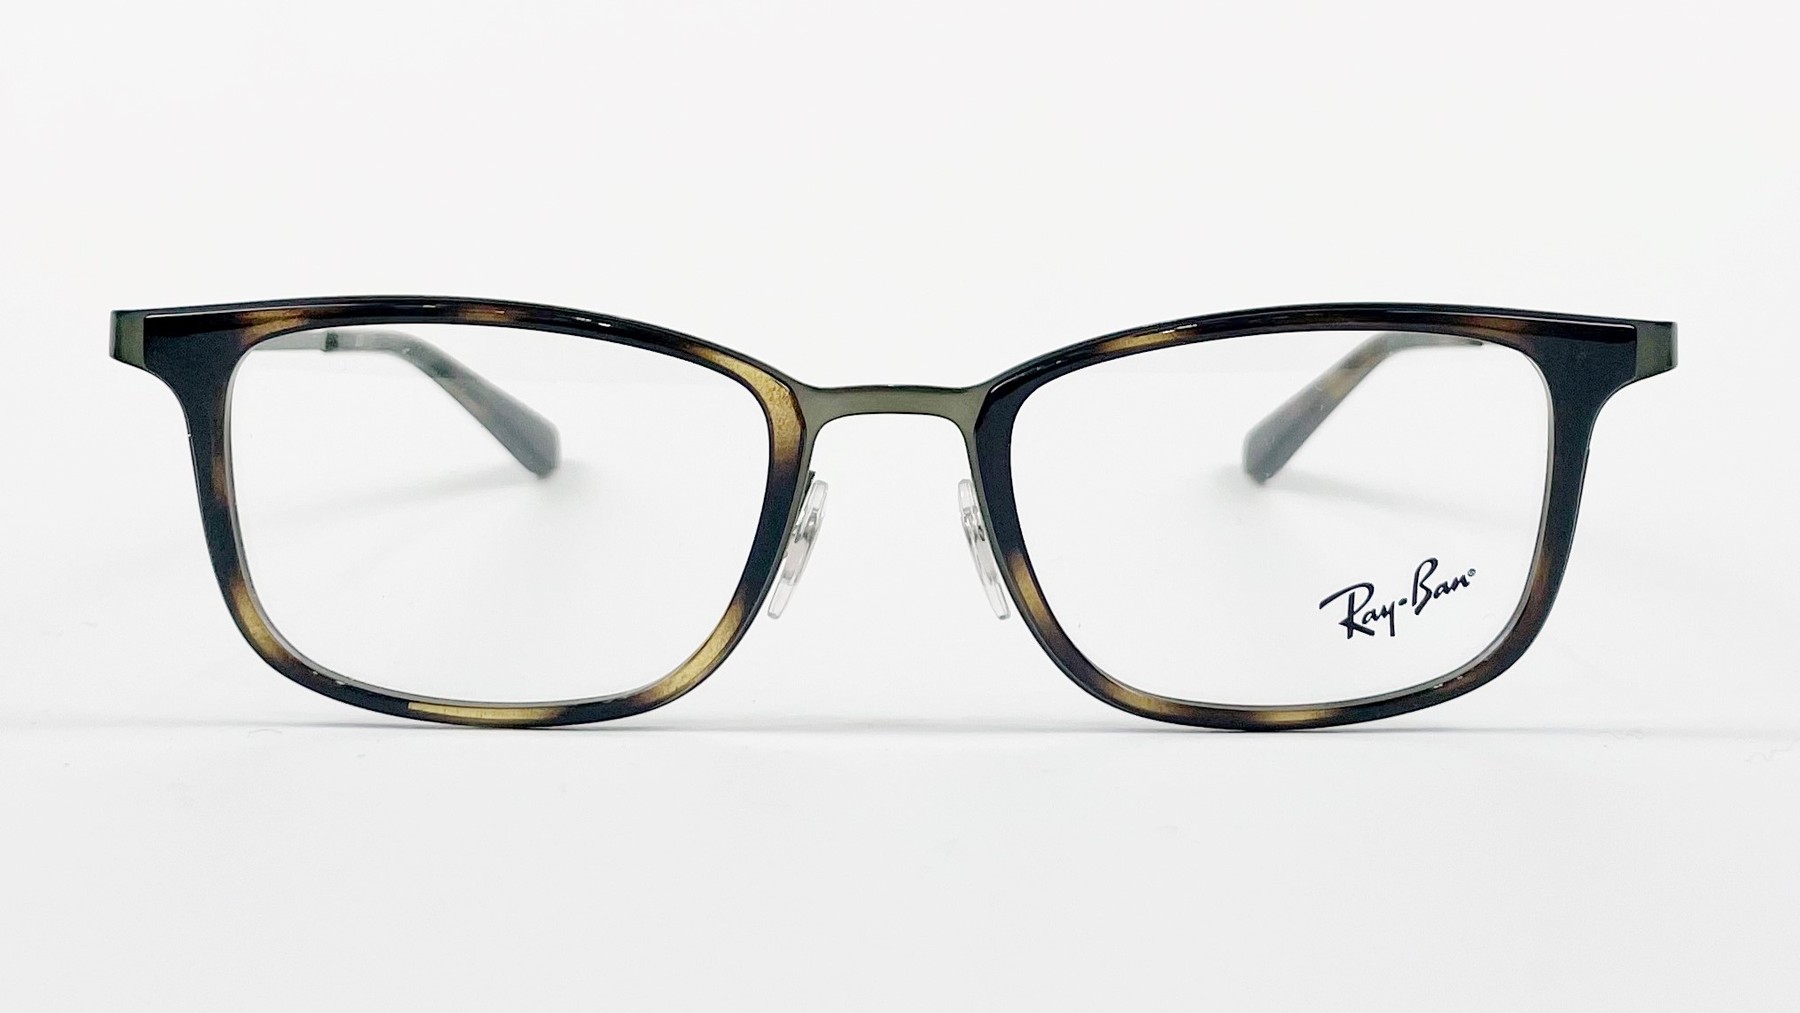 RayBan RB6373 2923, Korean glasses, sunglasses, eyeglasses, glasses